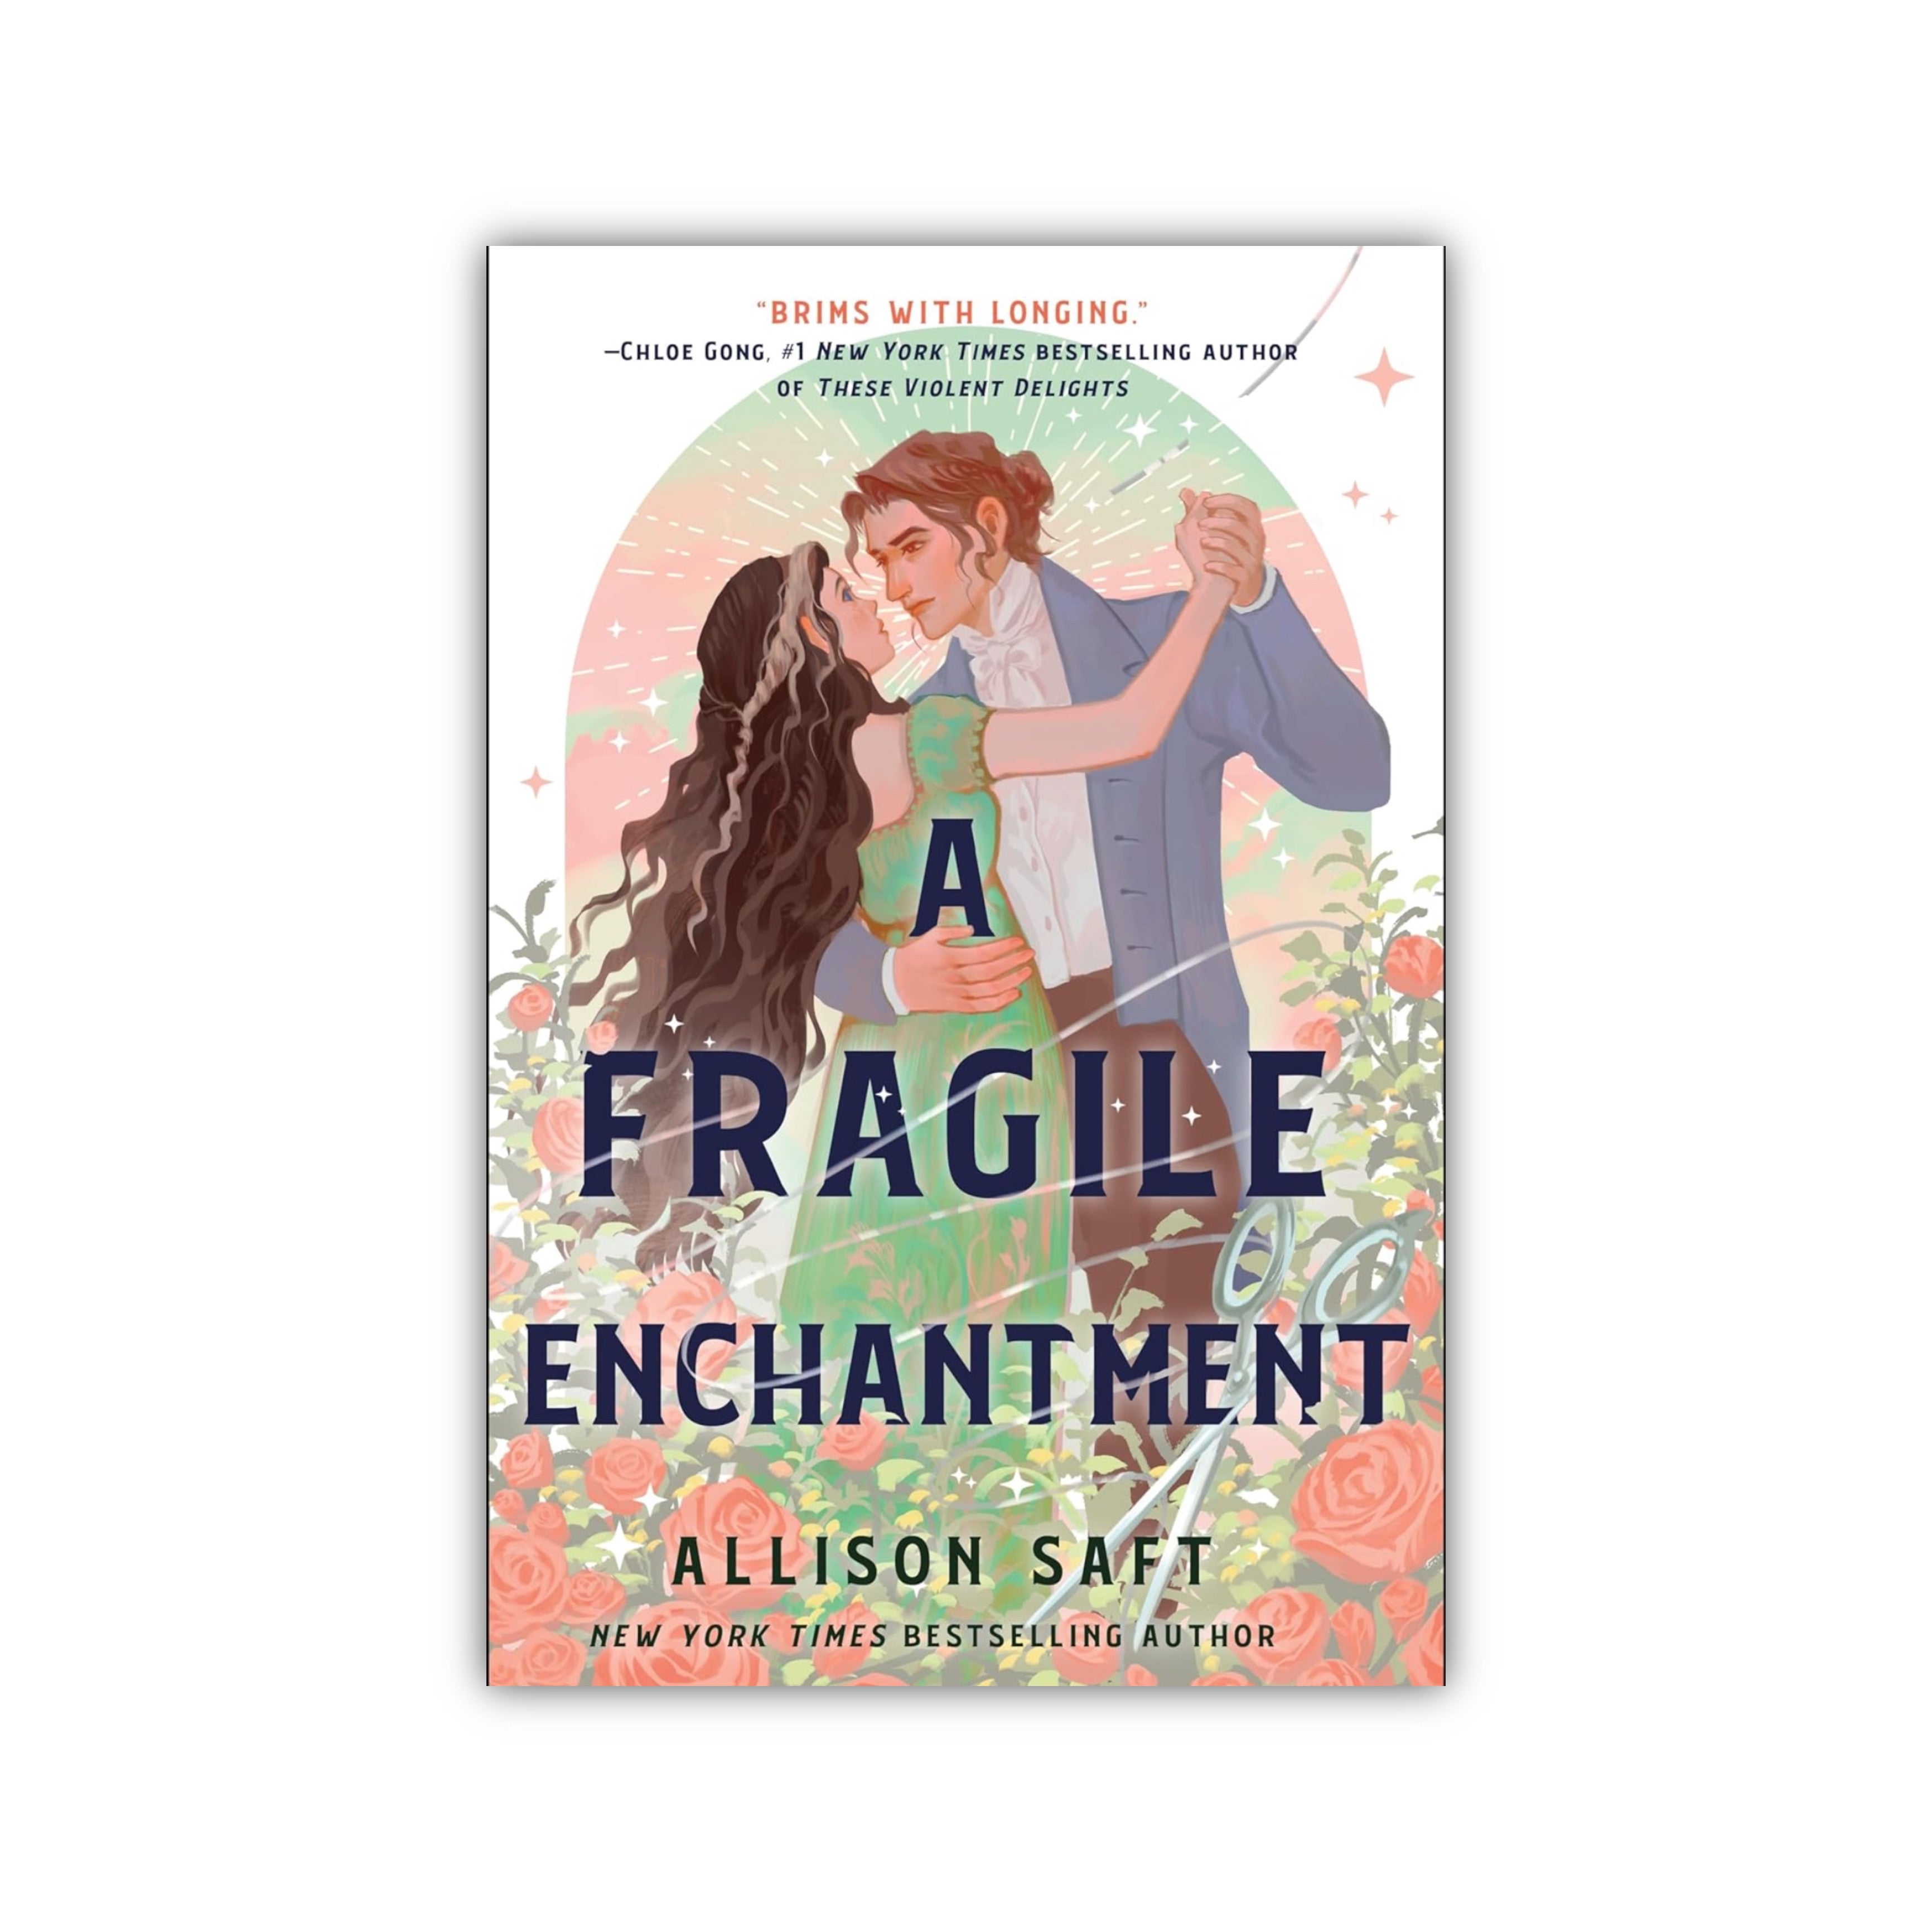 A Fragile Enchantment - Allison Saft